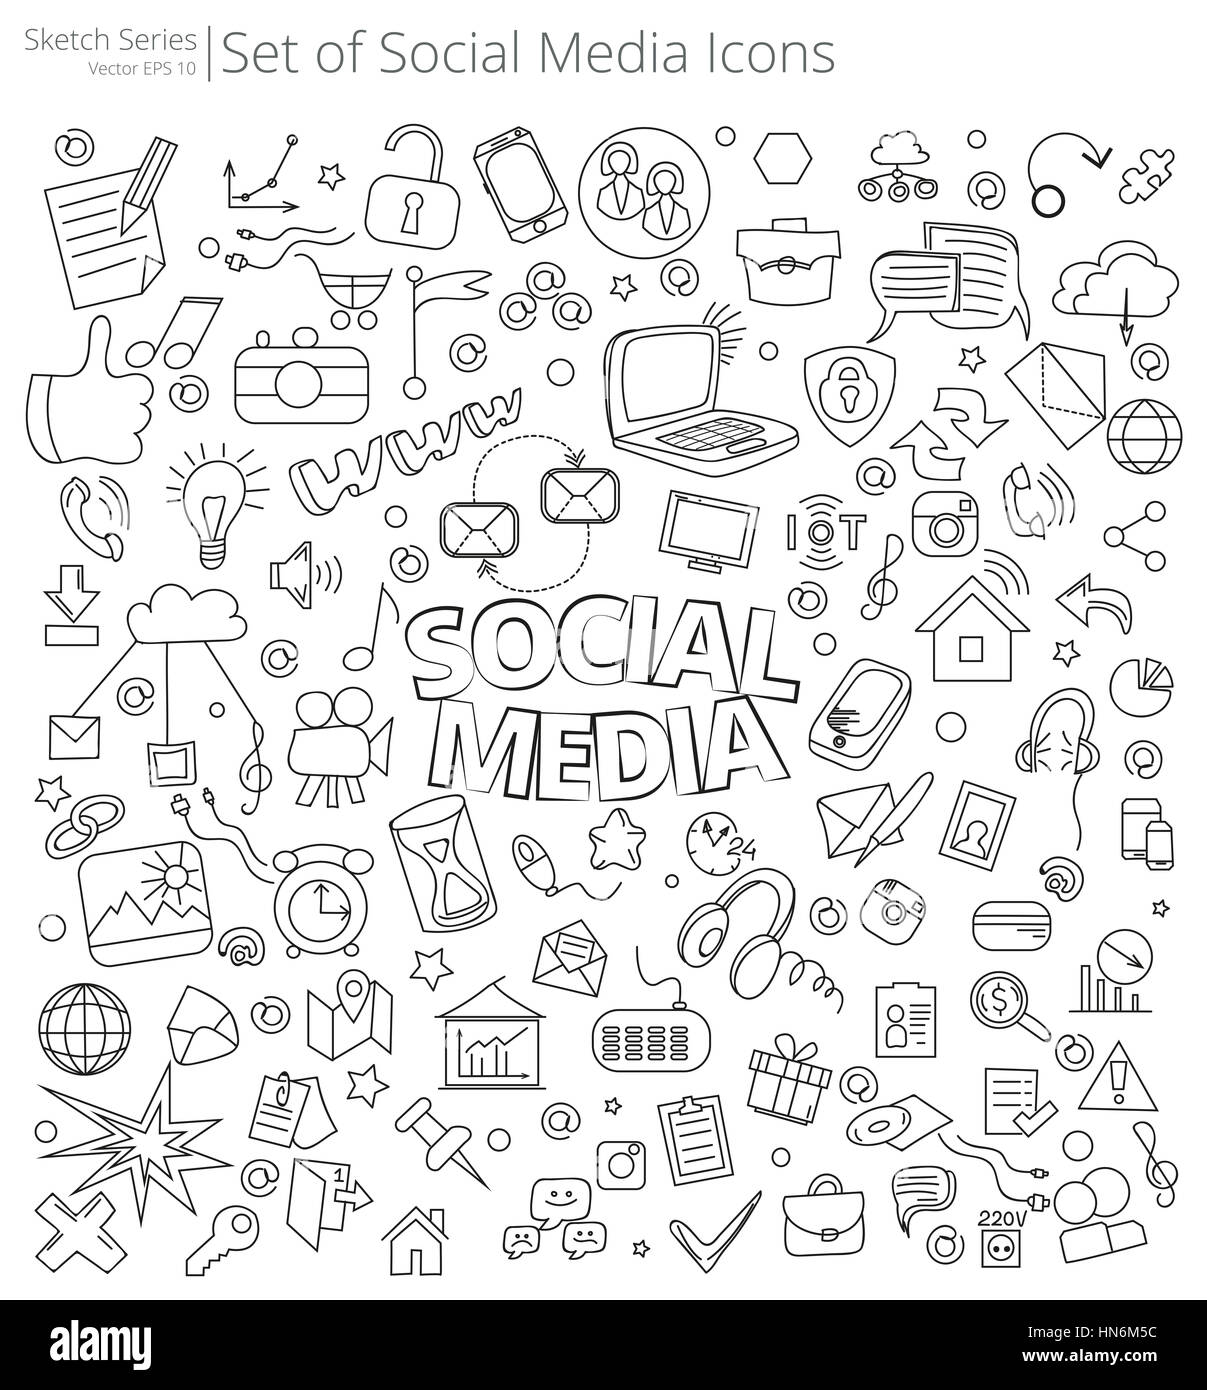 Vektor-Illustration der großen Satz von Social Media Icons und Kritzeleien. Handgezeichnete Skizze Stil. Stockfoto